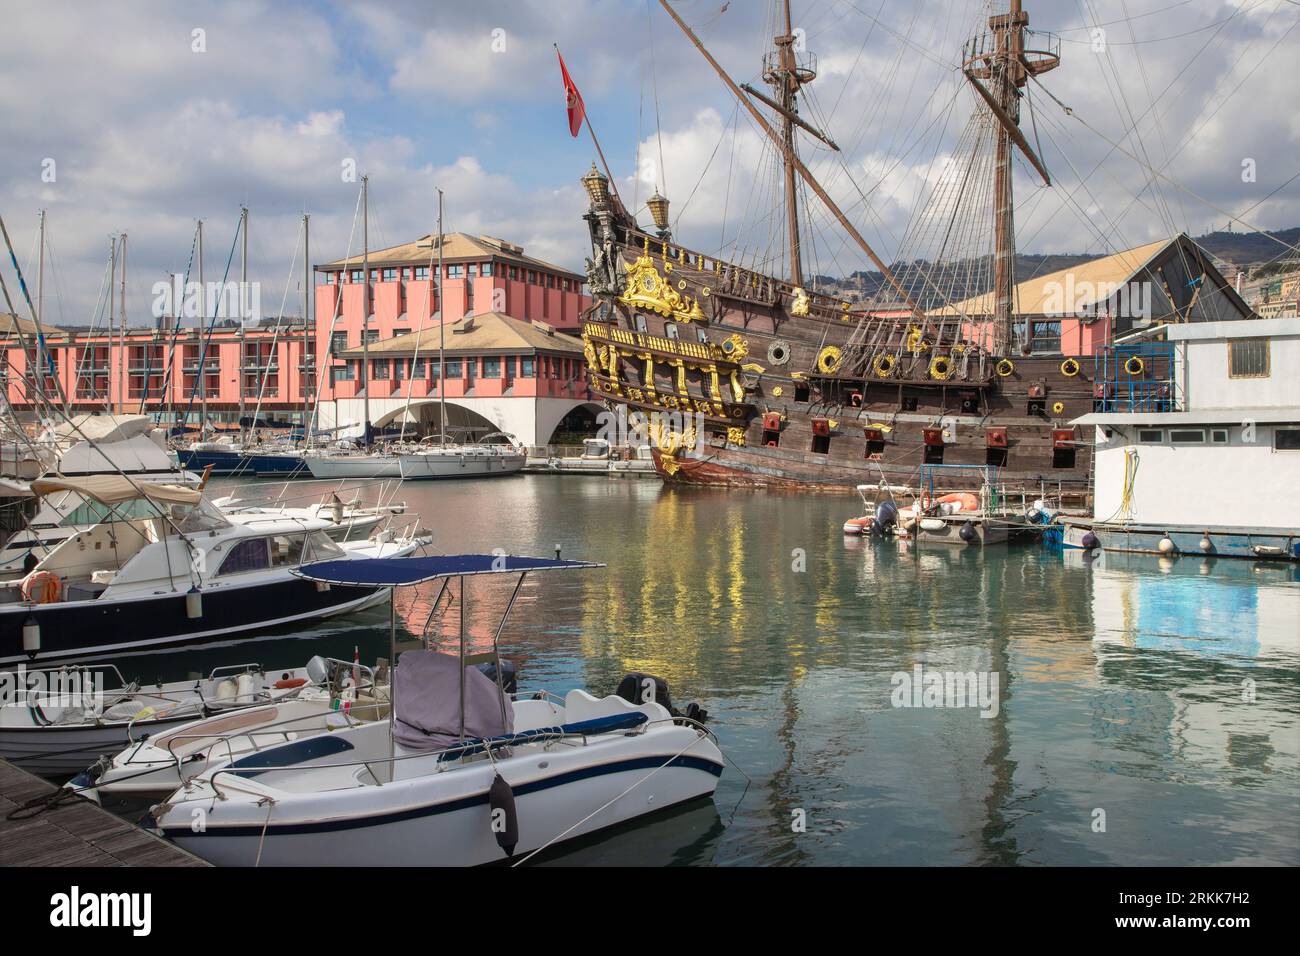 Genova - le galion de Neptune - réplique d'un galion espagnol du 17e siècle conçu par l'architecte naval David Cannell. Le navire a été construit en 1985 Banque D'Images